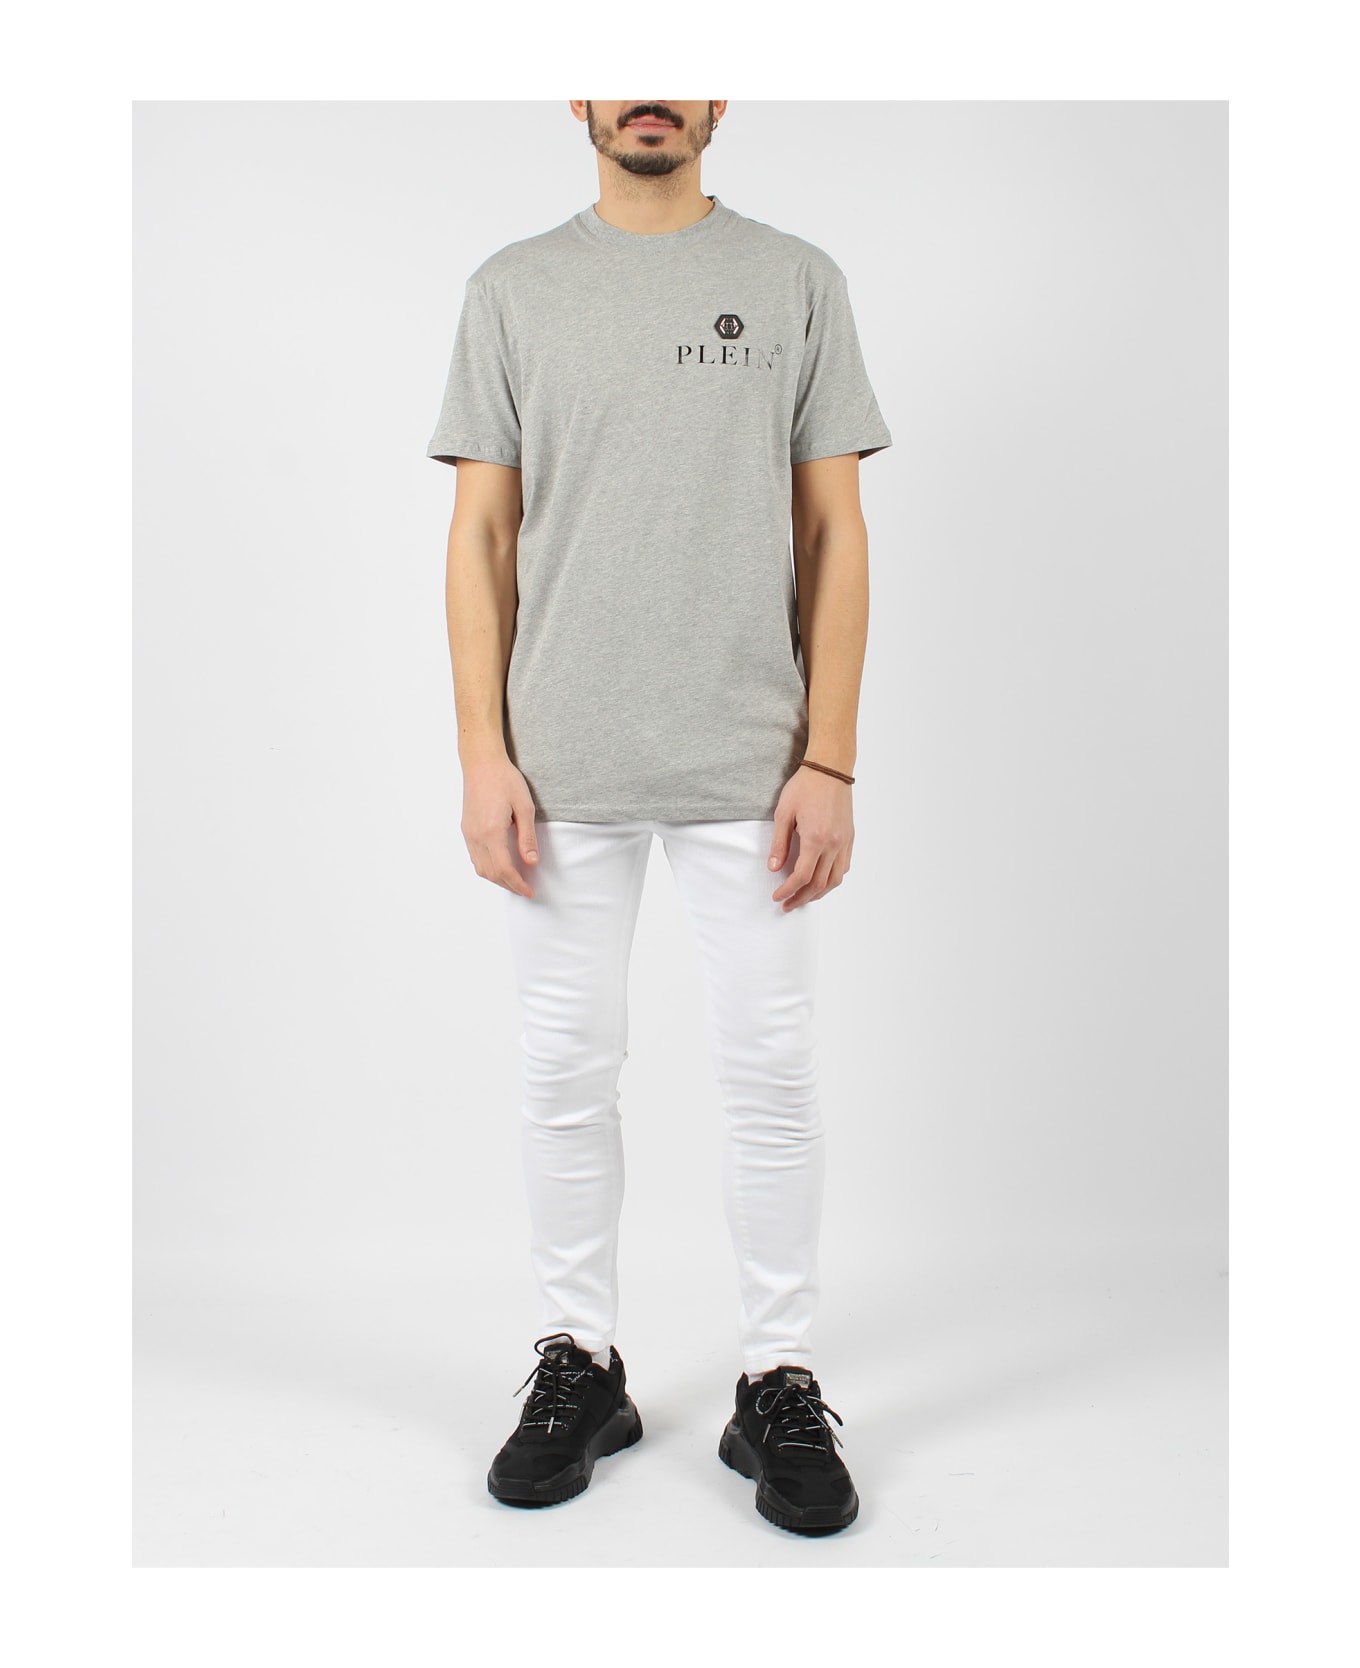 Philipp Plein Round Neck Ss T-shirt - Grey シャツ